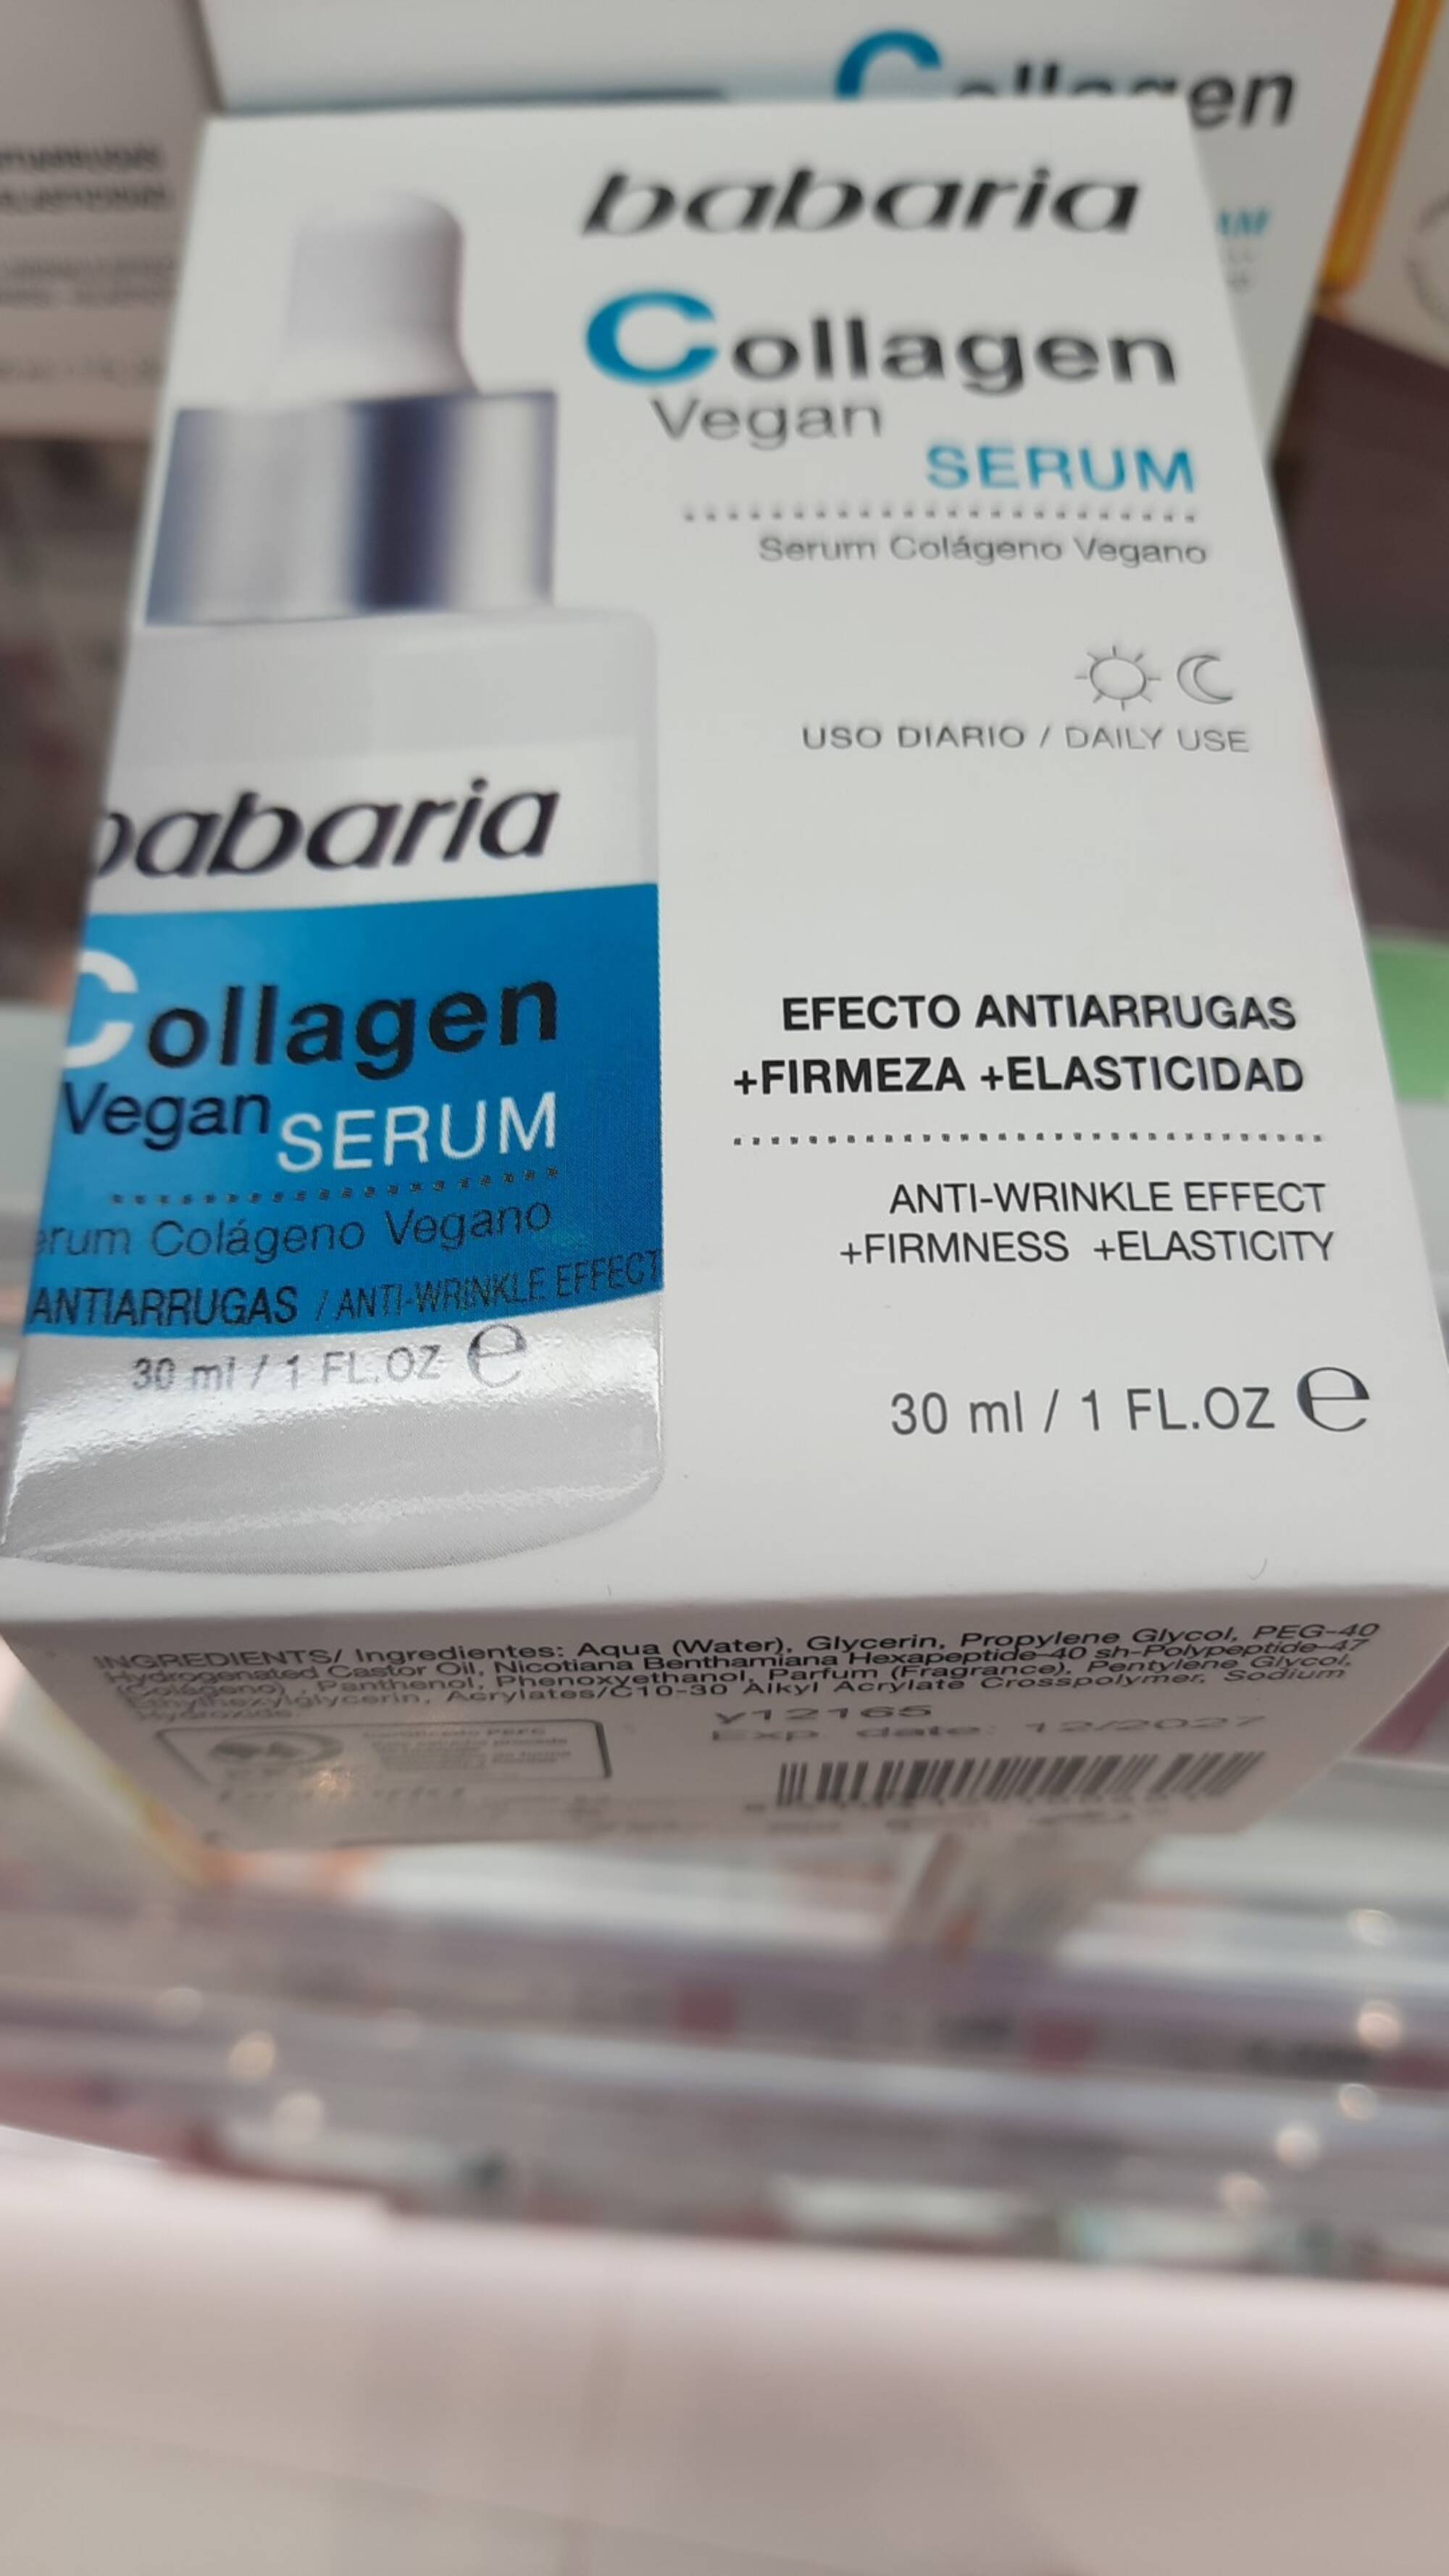 BABARIA - Collagen vegan serum anti-wrinkle effect